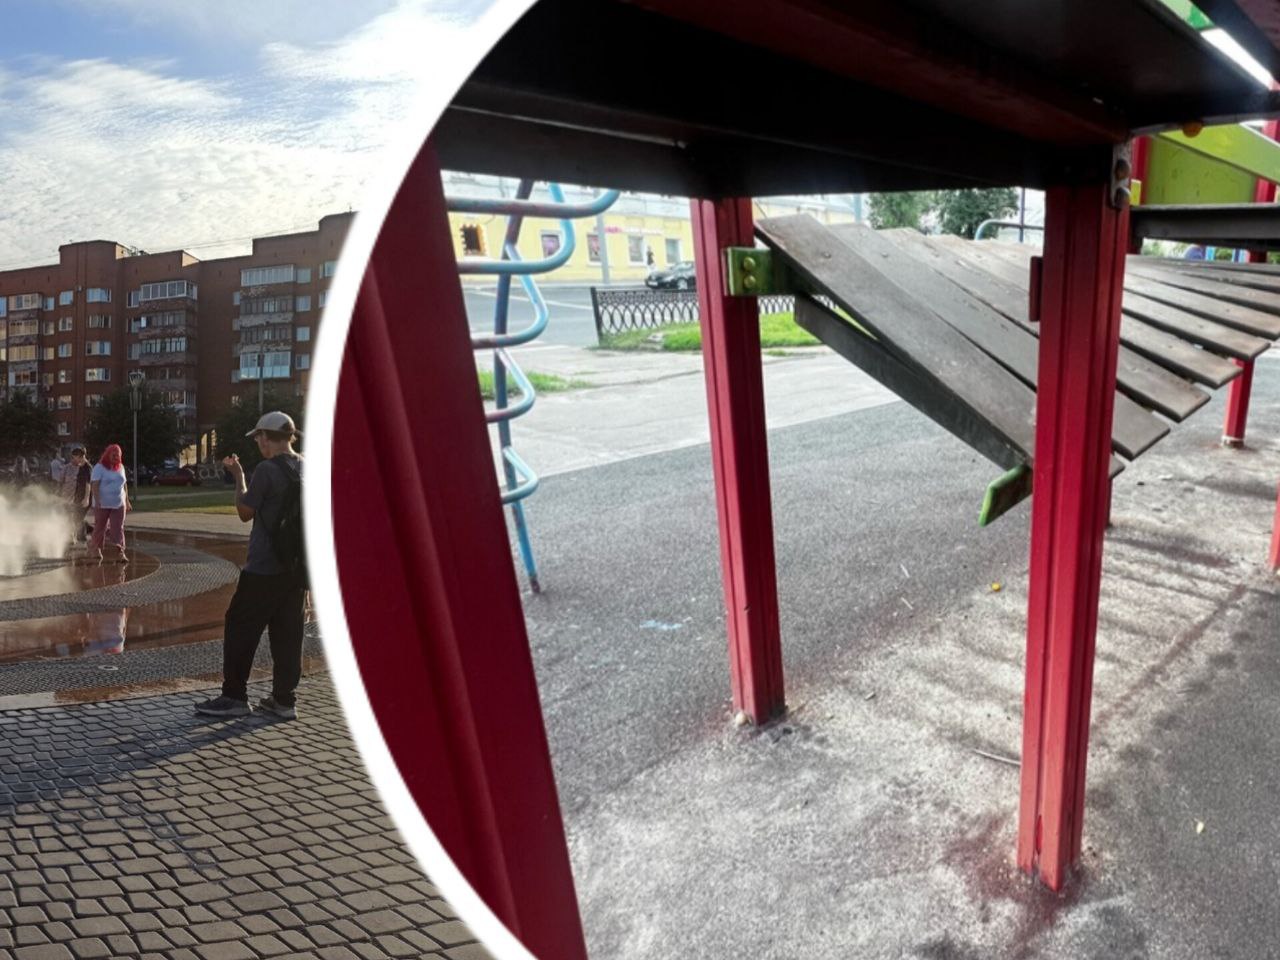  Ребенок чуть не выпал: в центре Ярославля сломана детская площадка